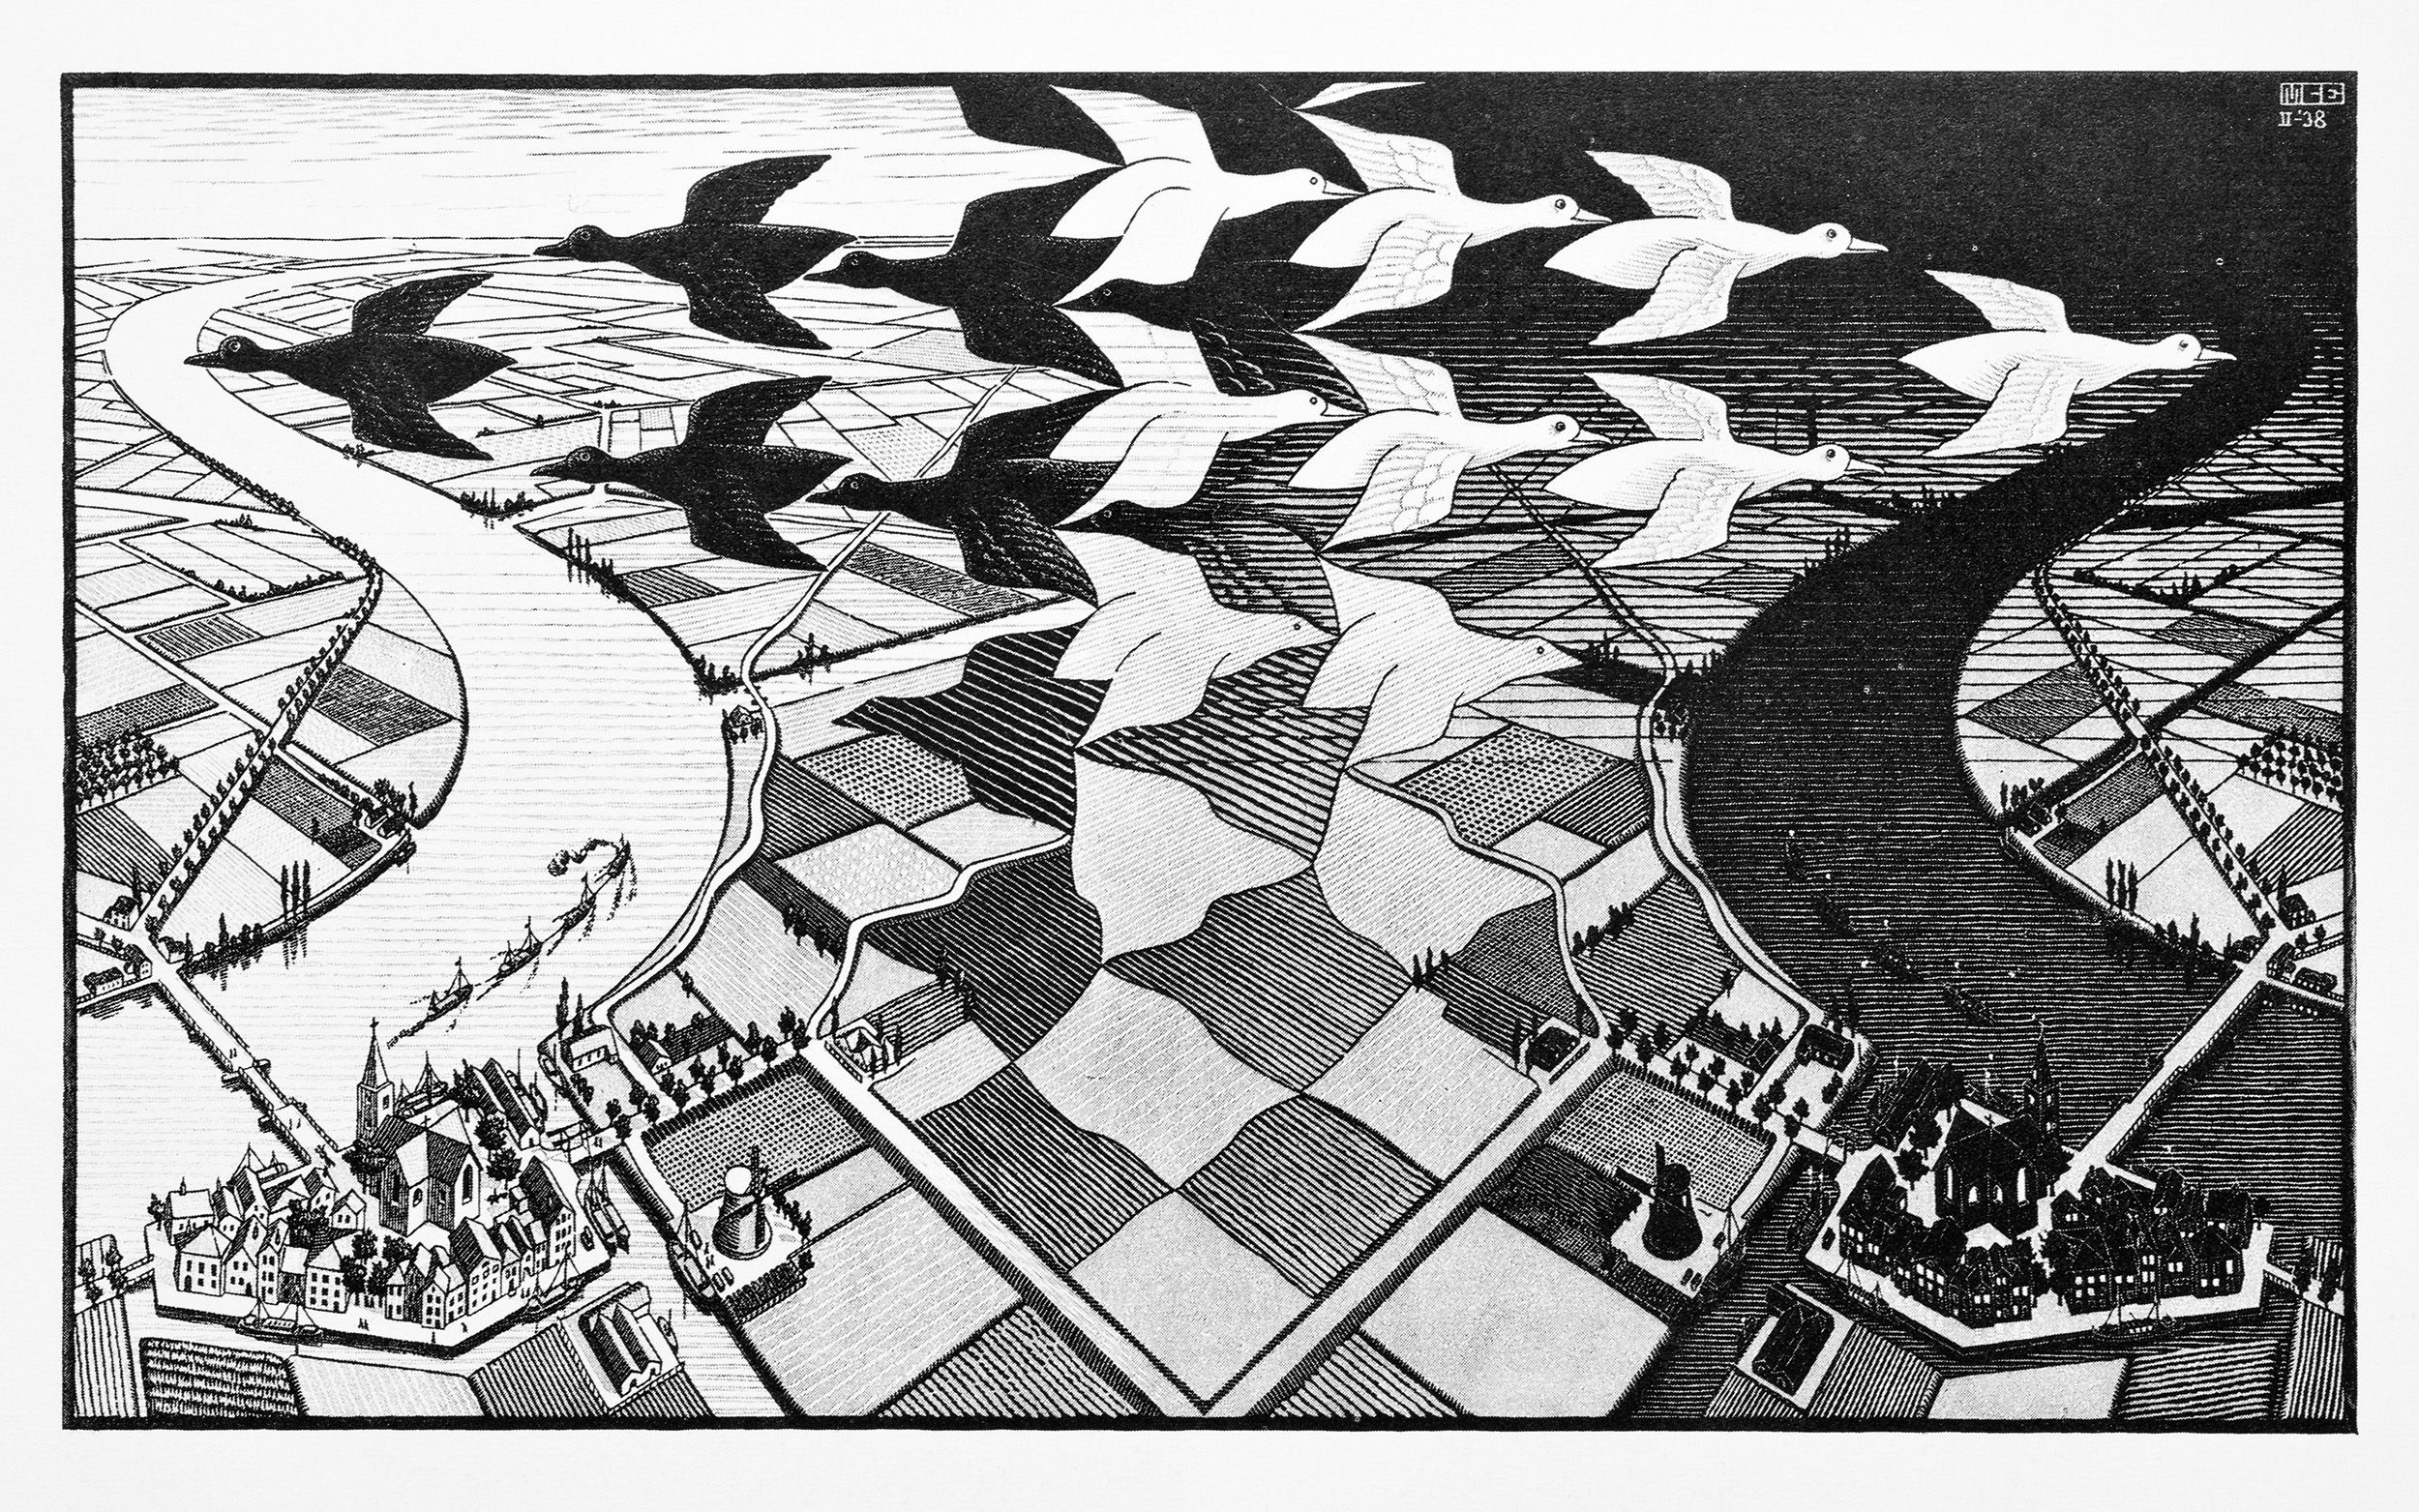 Escher Tessellations